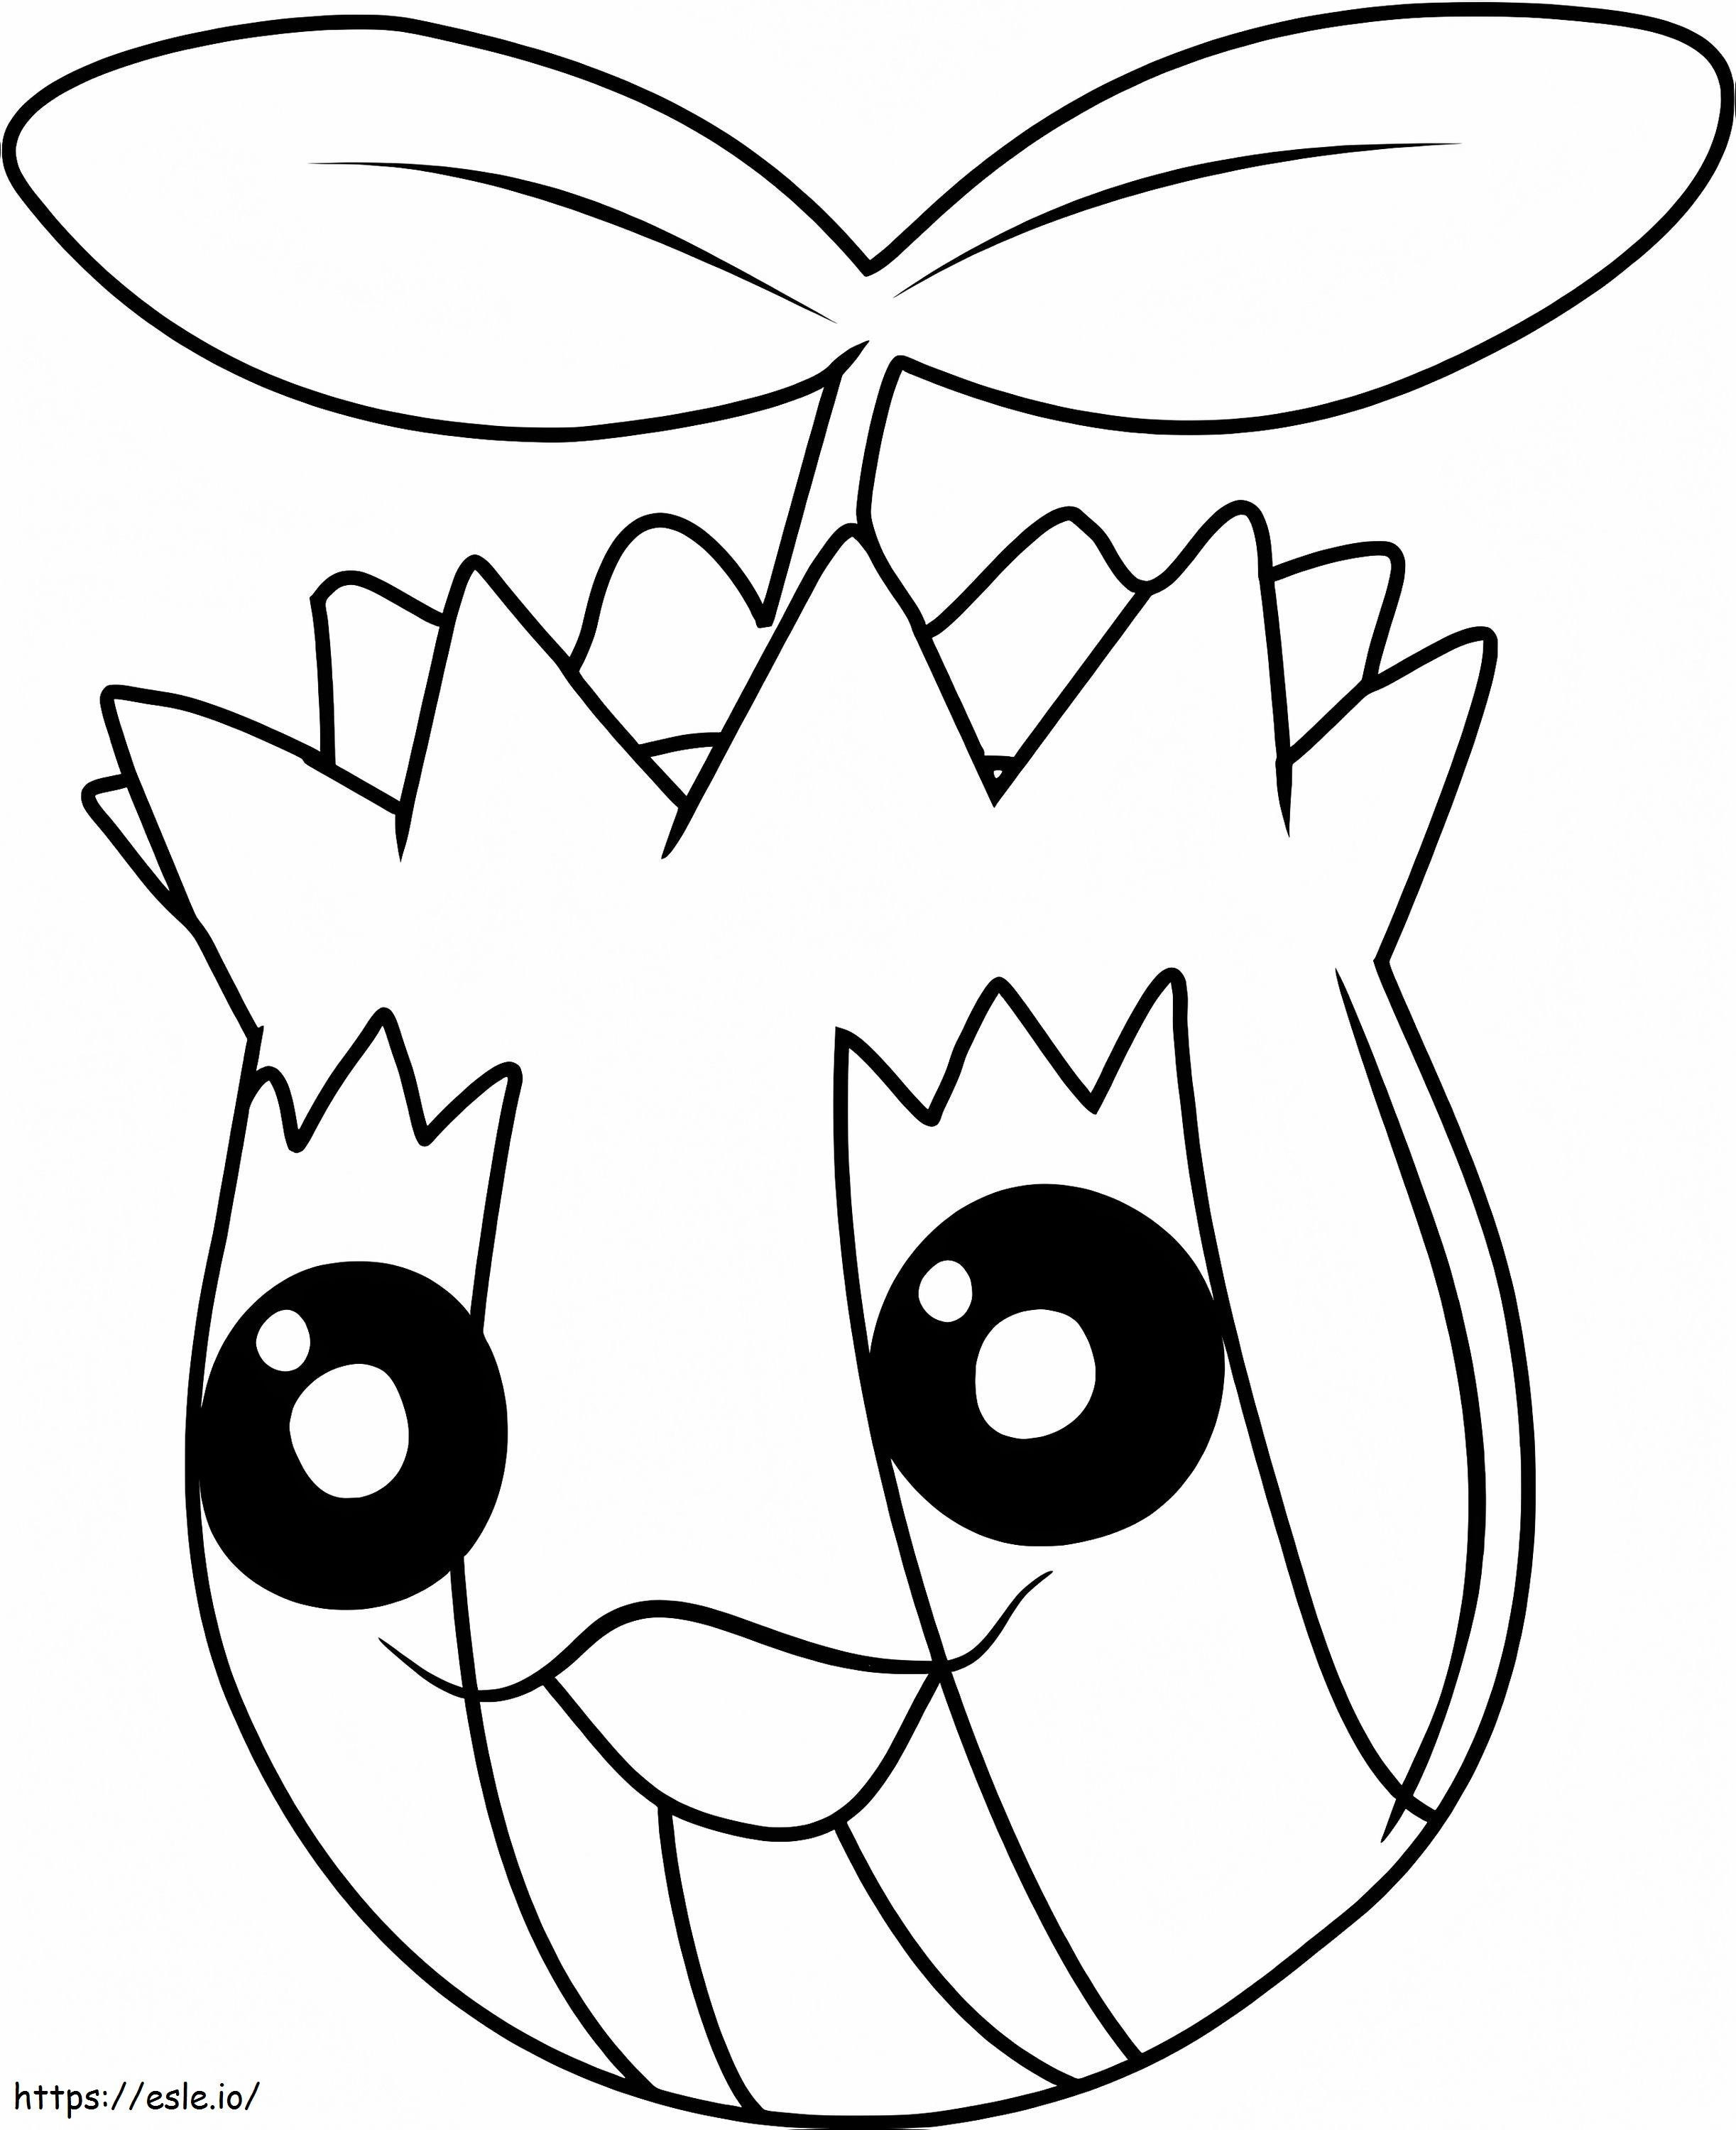 Coloriage Un Pokémon coulé à imprimer dessin